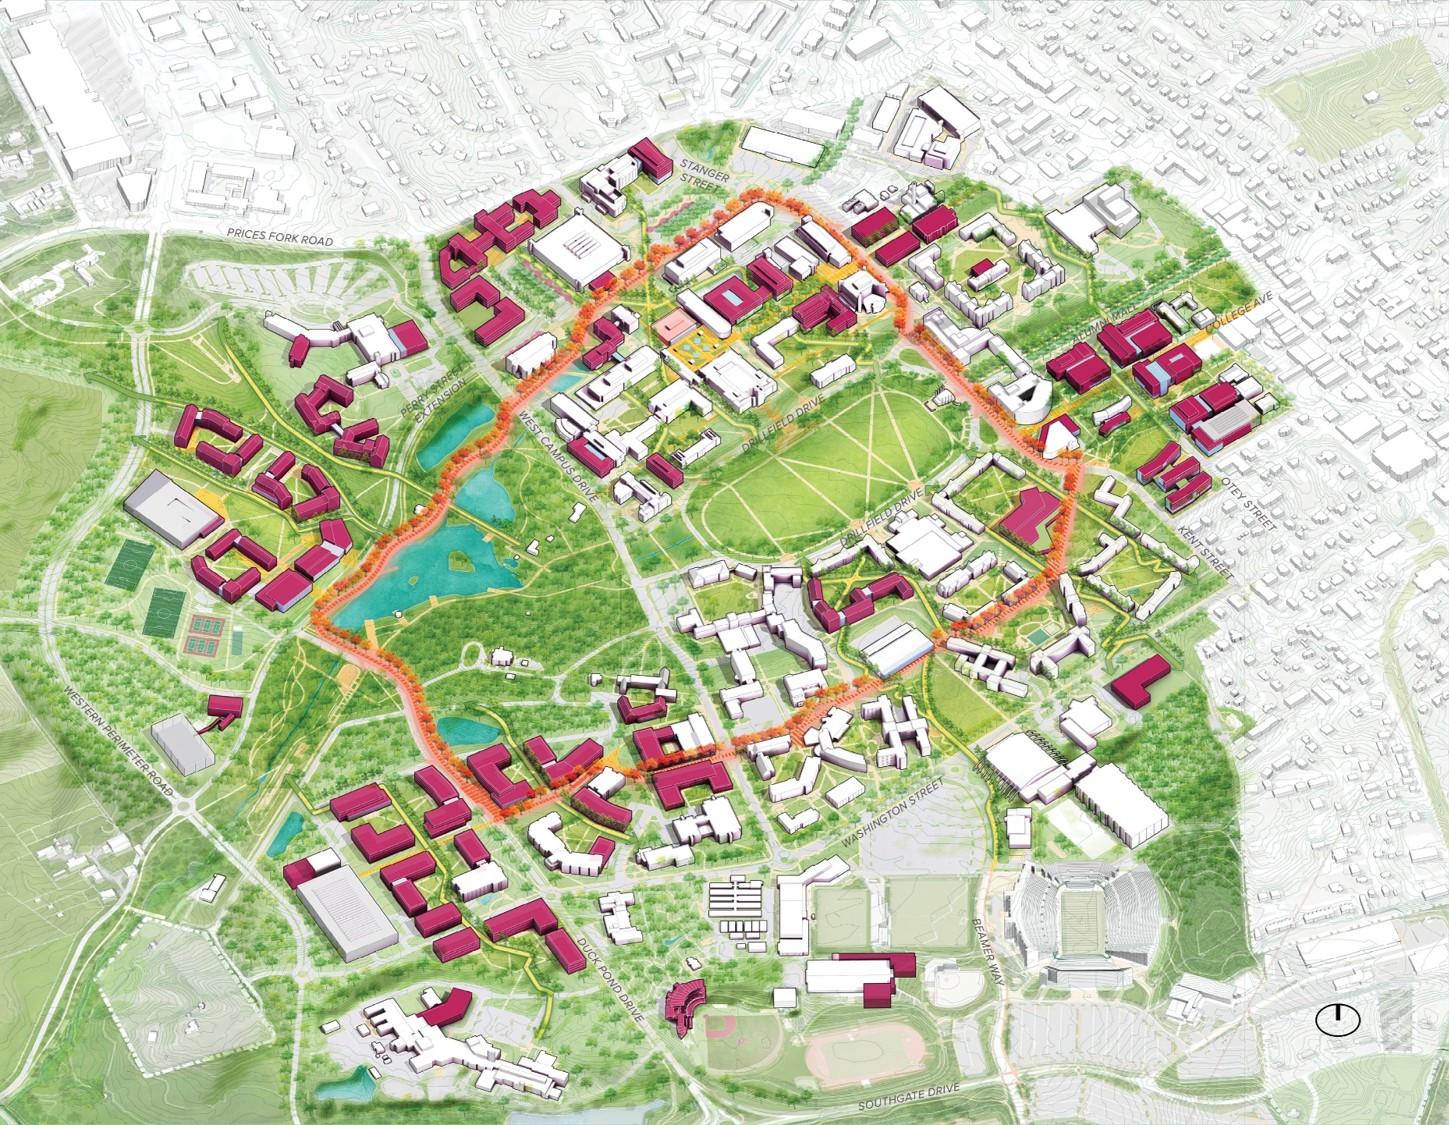 Diagram of Virginia Tech's master plan